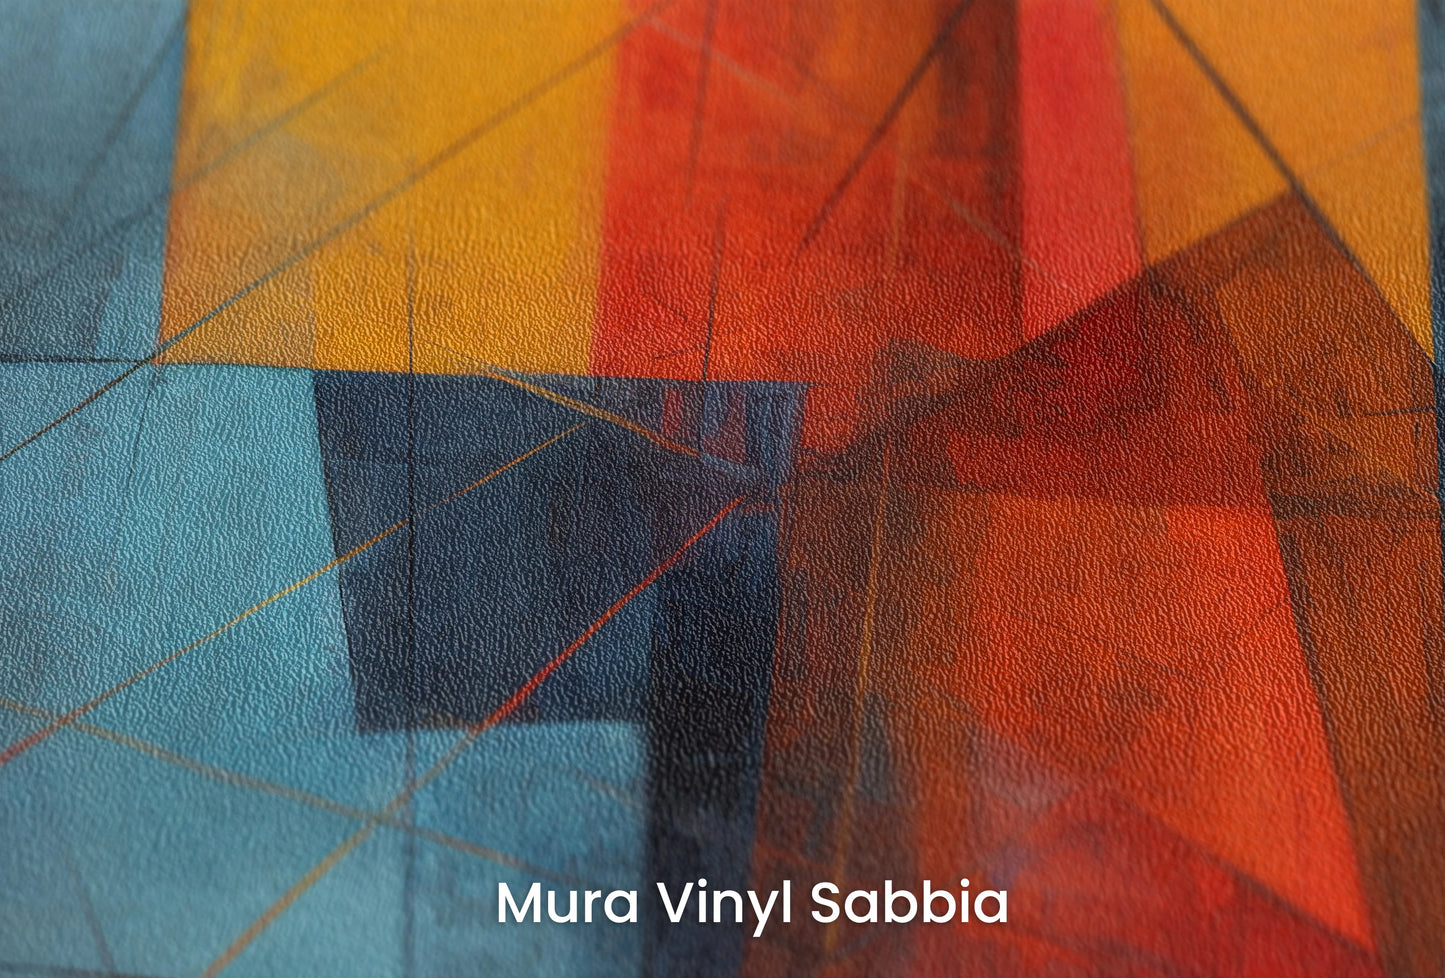 Zbliżenie na artystyczną fototapetę o nazwie Abstract Dynamics #2 na podłożu Mura Vinyl Sabbia struktura grubego ziarna piasku.